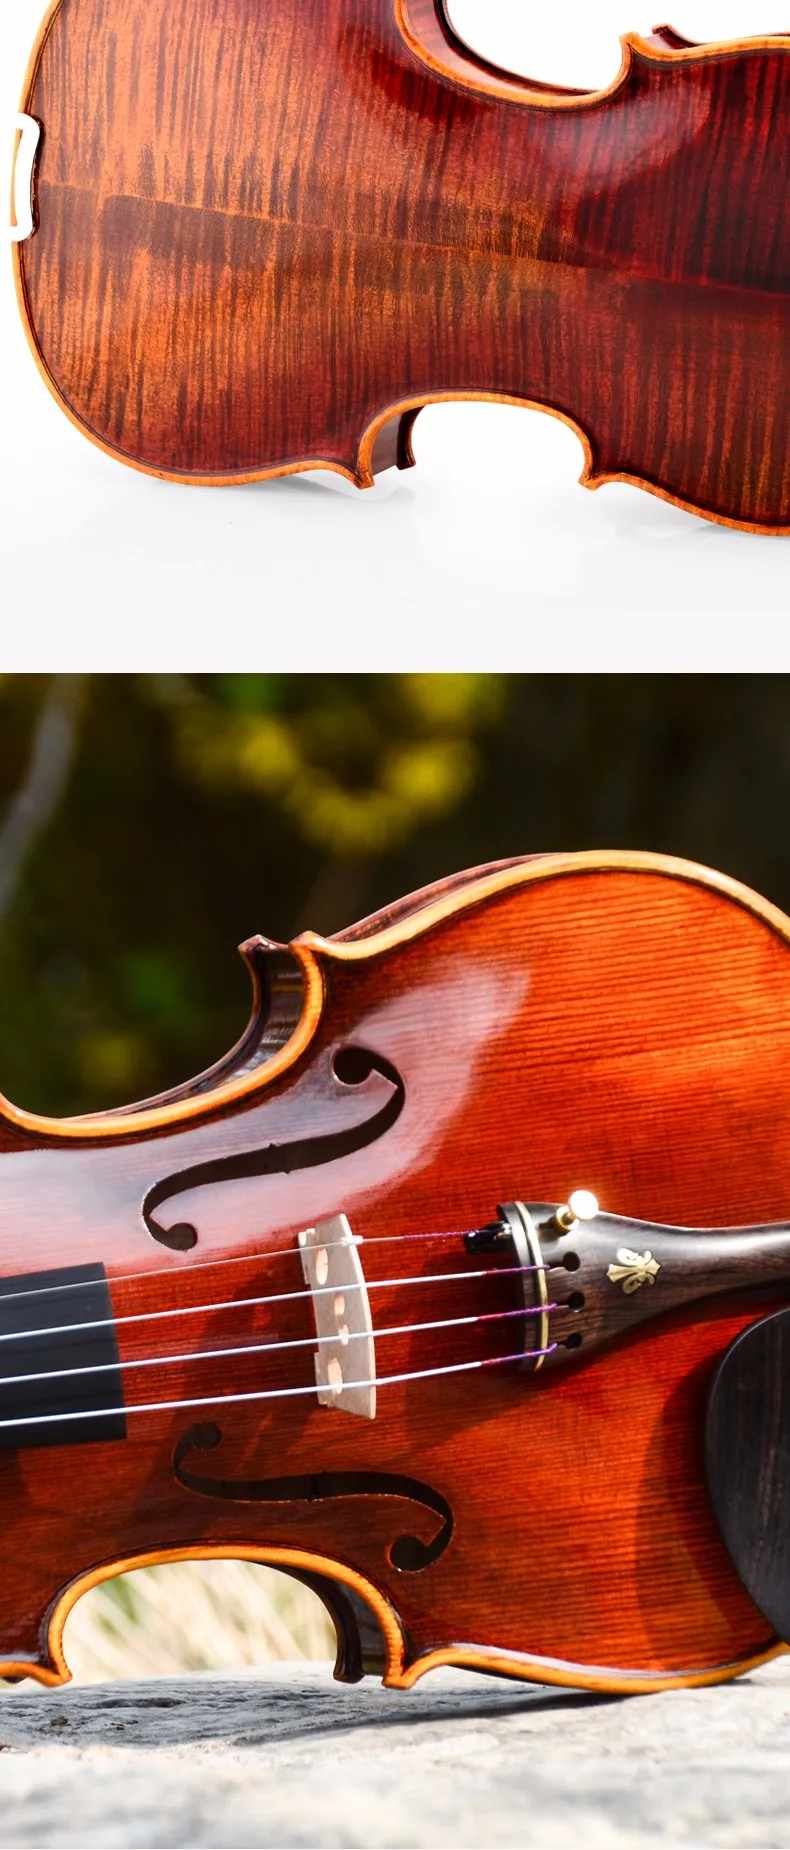 Профессиональная скрипка Кристина V05A, скрипка o 4/4, скрипка из клена ручной работы, музыкальные инструменты, Скрипка чехол, лук, канифоль